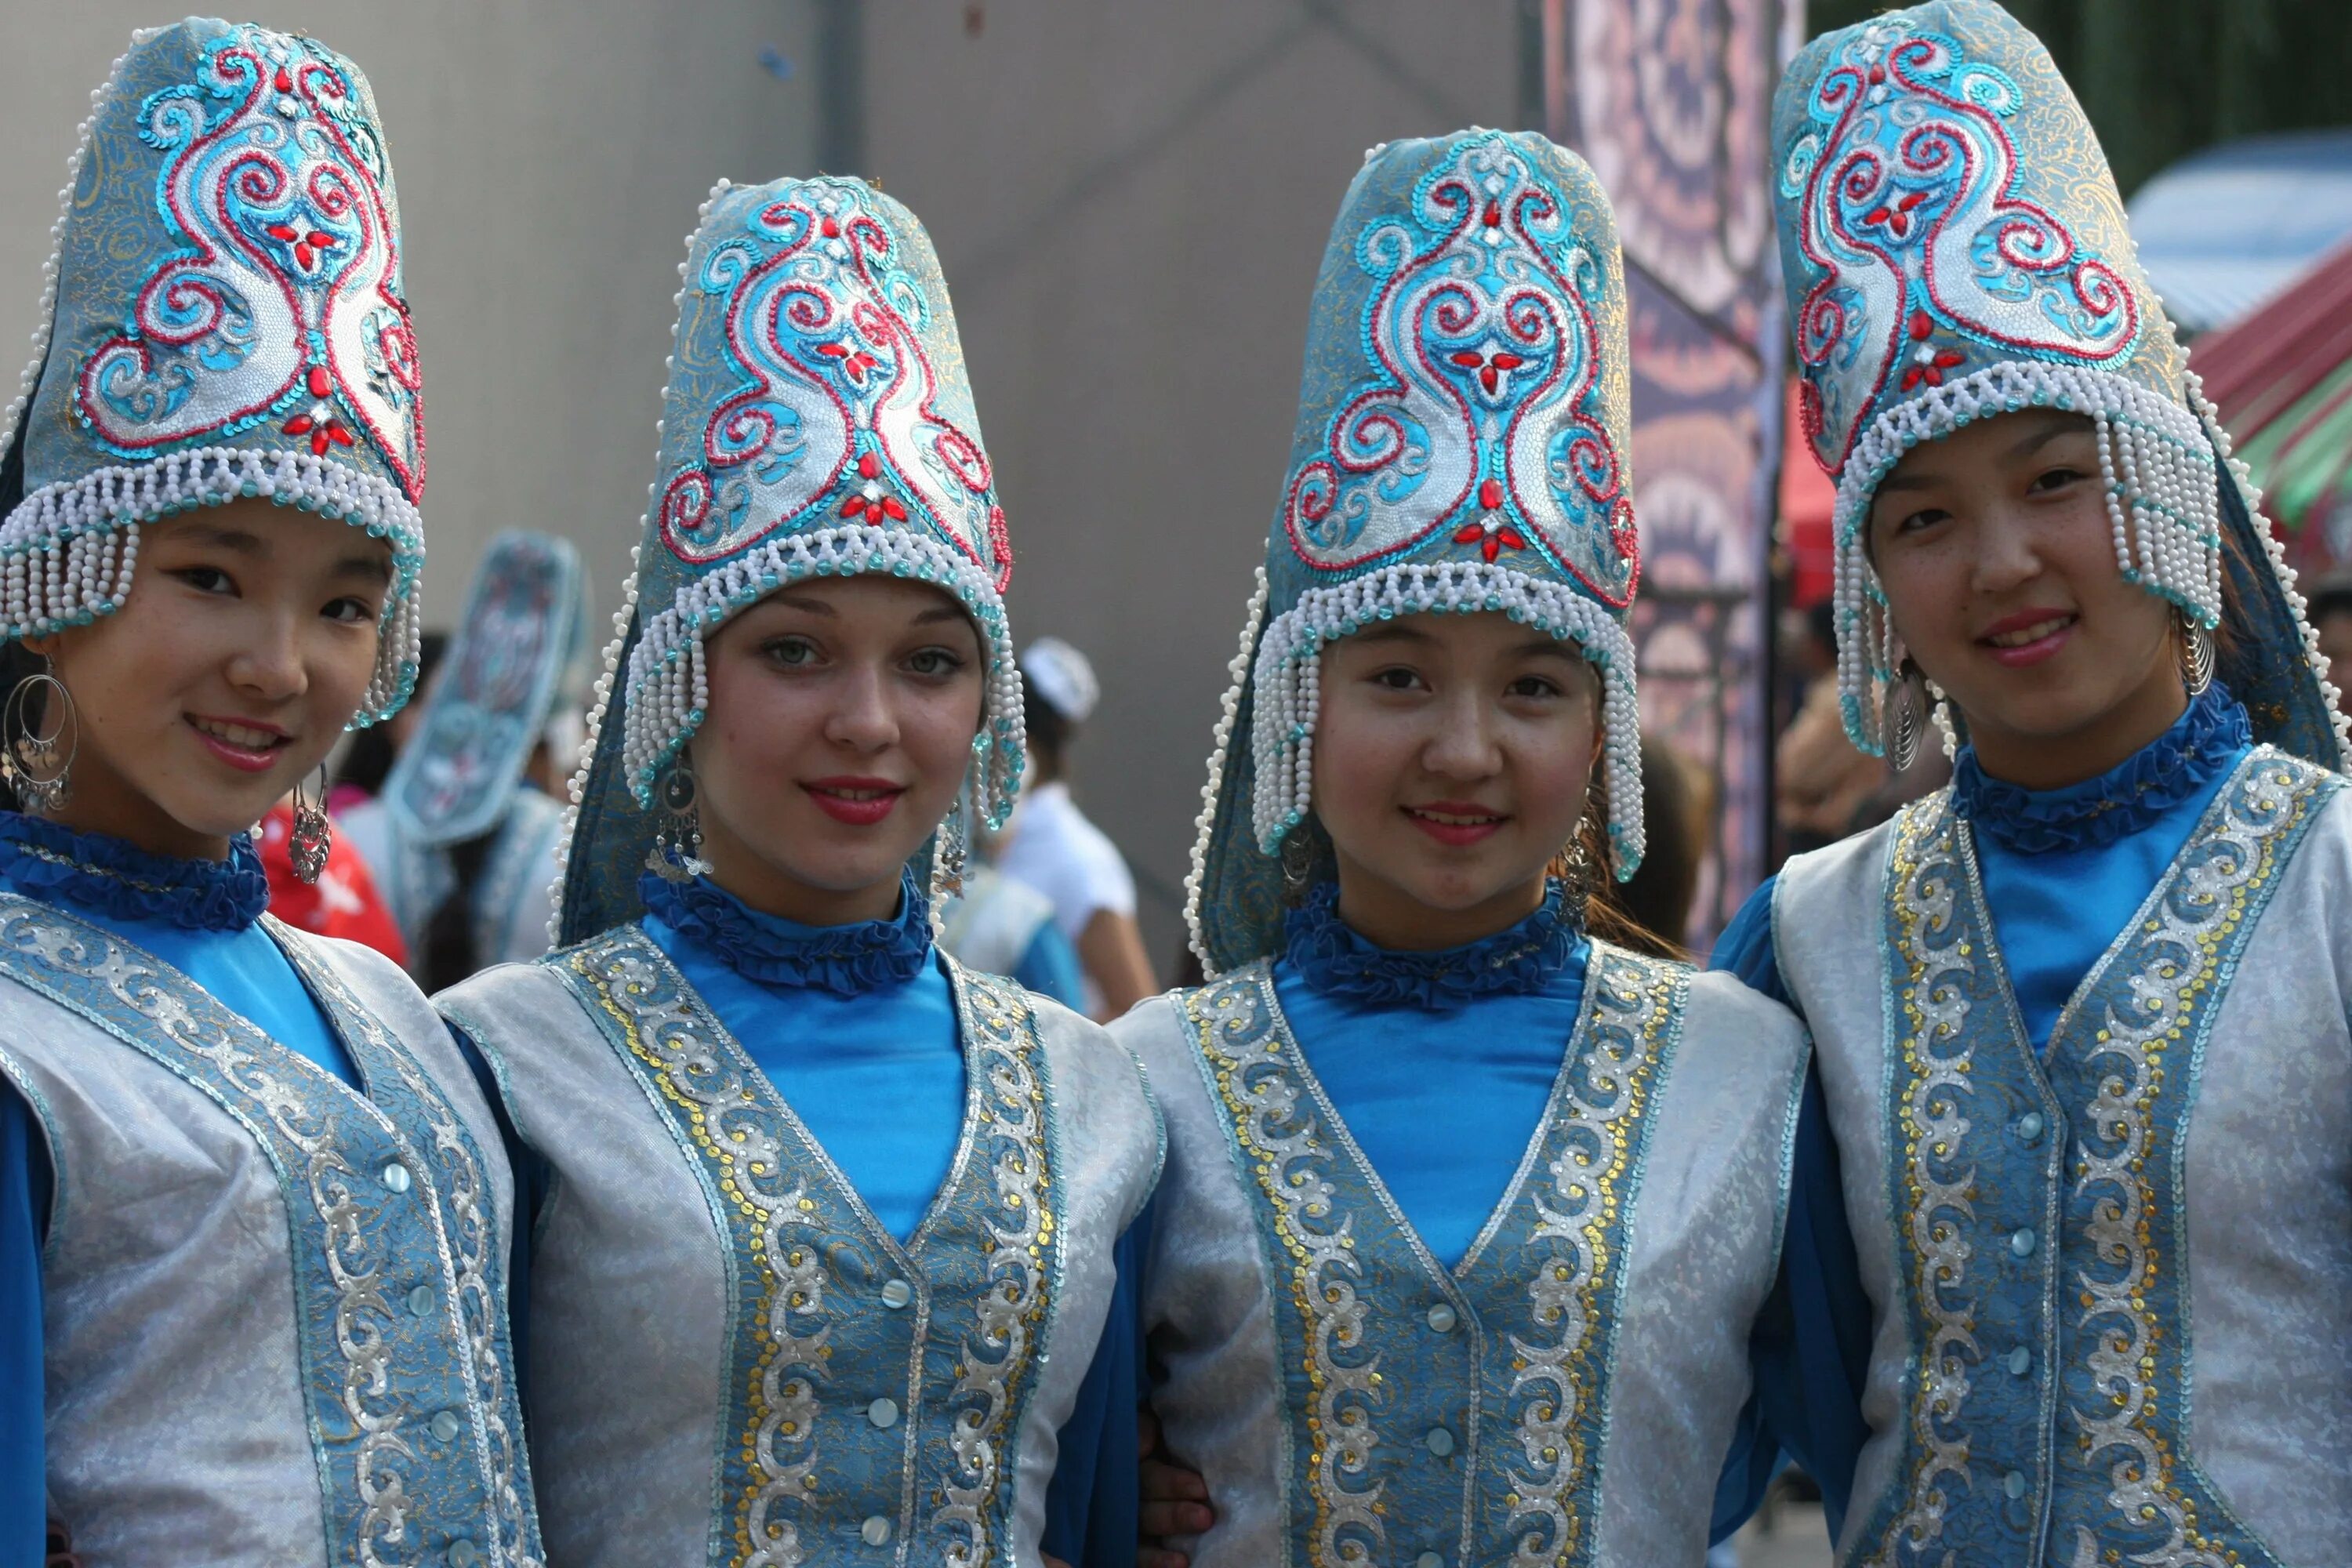 Сайт киргизов. Национальный костюм Киргизии. Киргизистан Национальная одежда. Нац головной убор Киргизии Элечек. Традициональная одежда Киргизия.